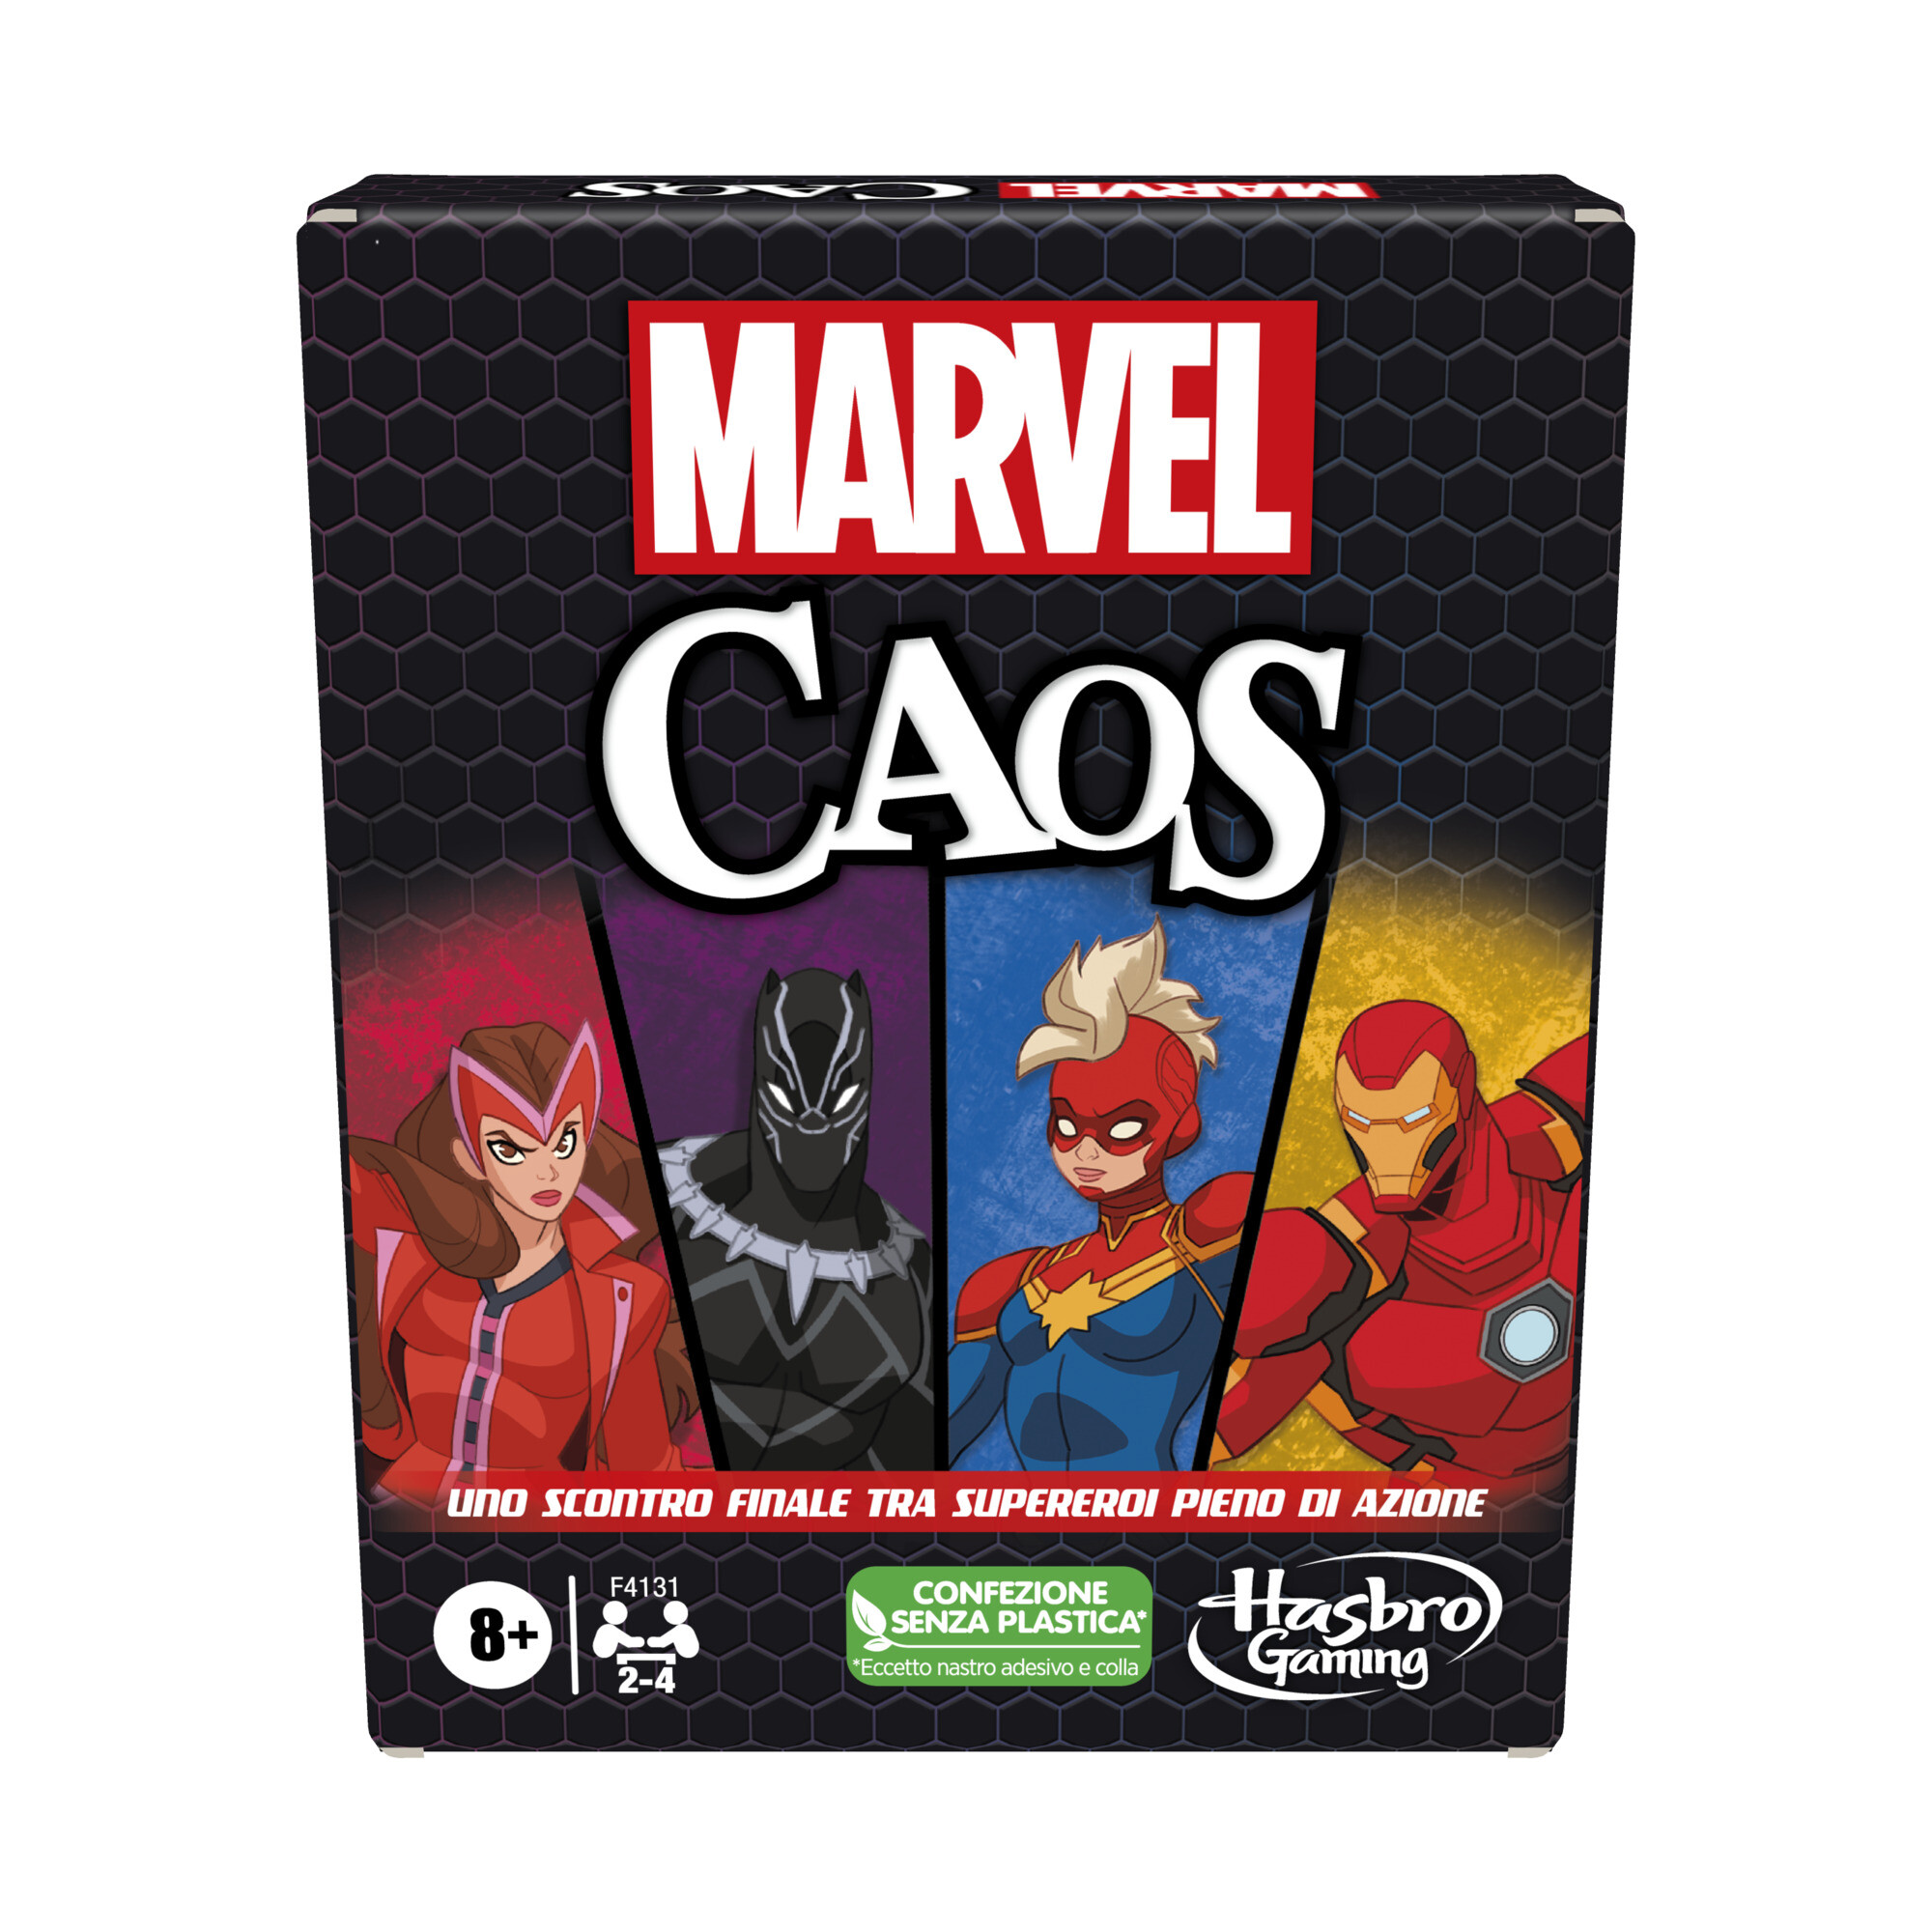 Marvel caos - gioco di carte hasbro gaming con i supereroi marvel, divertente gioco per famiglie dagli 8 anni in su, gioco rapido e semplice da imparare - 